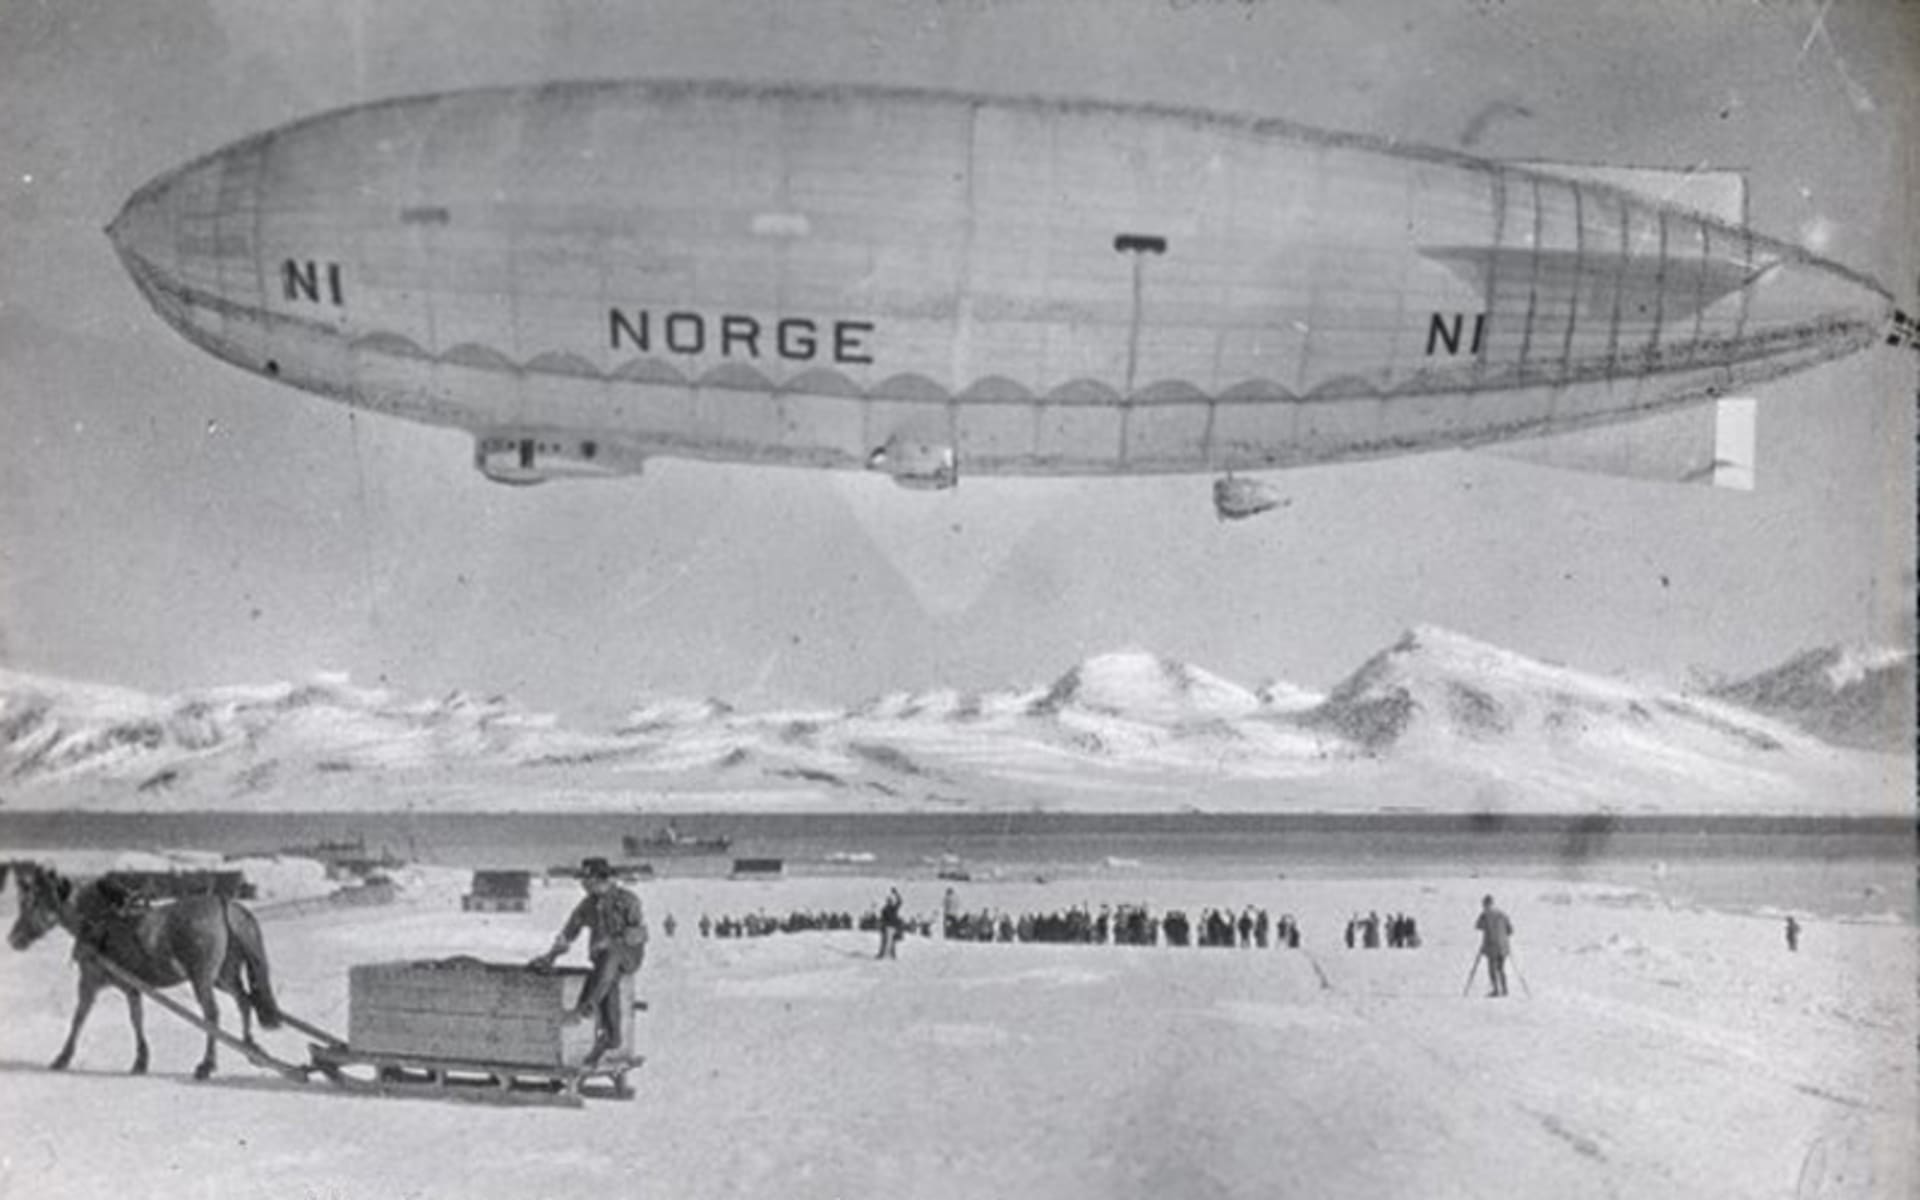 Vzducholoď Norge jako první doletěla přes Severní pól z Evropy do Ameriky